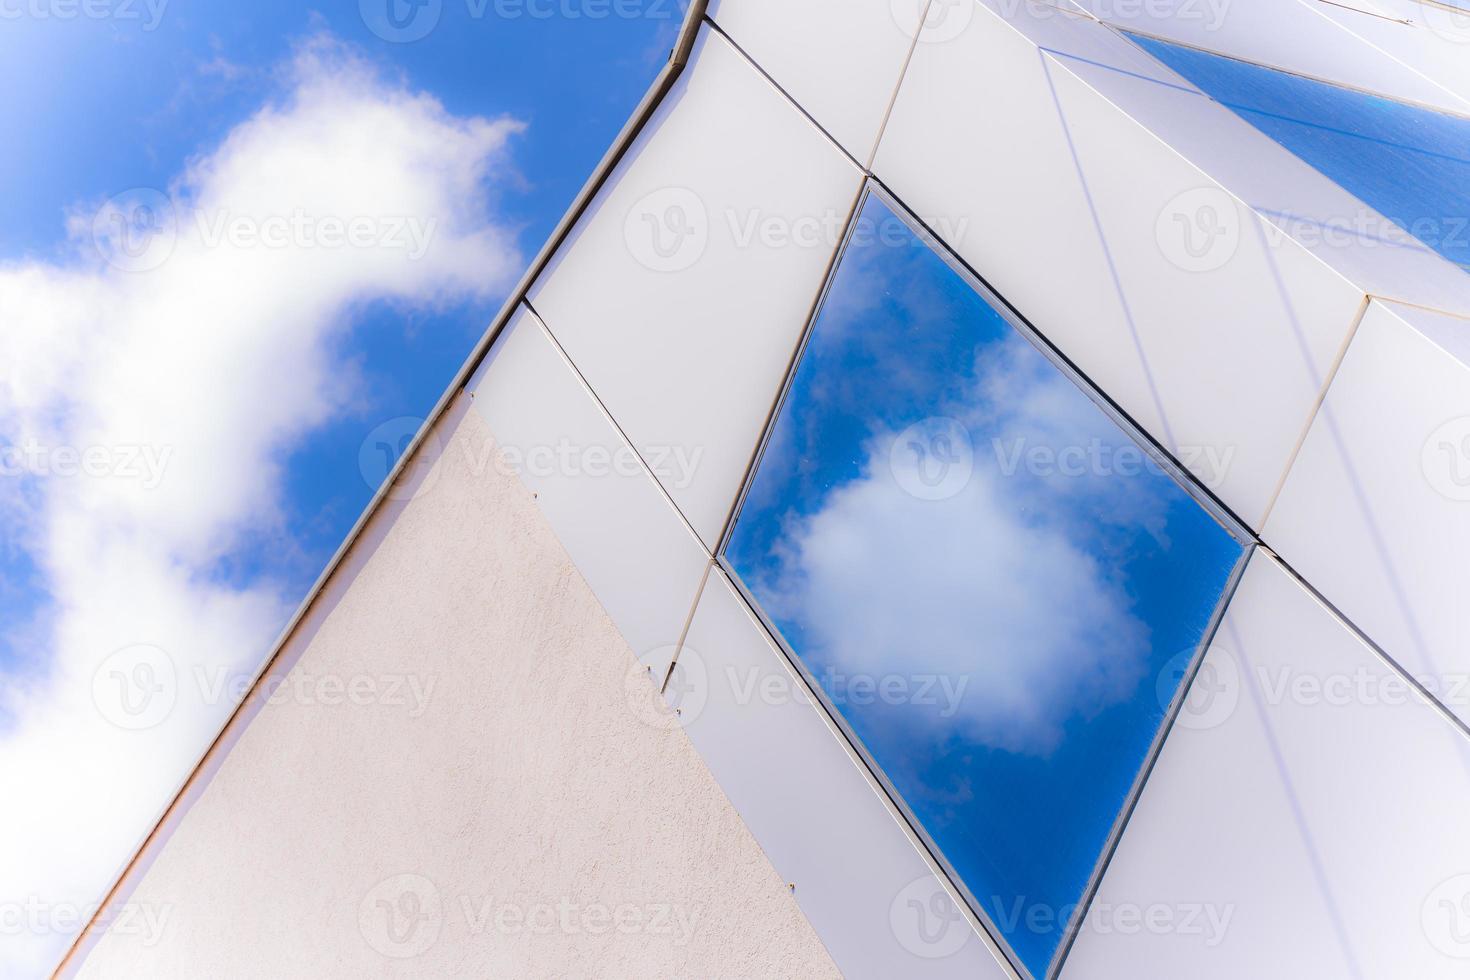 hemelbezinning oin het venster van modern gebouw foto